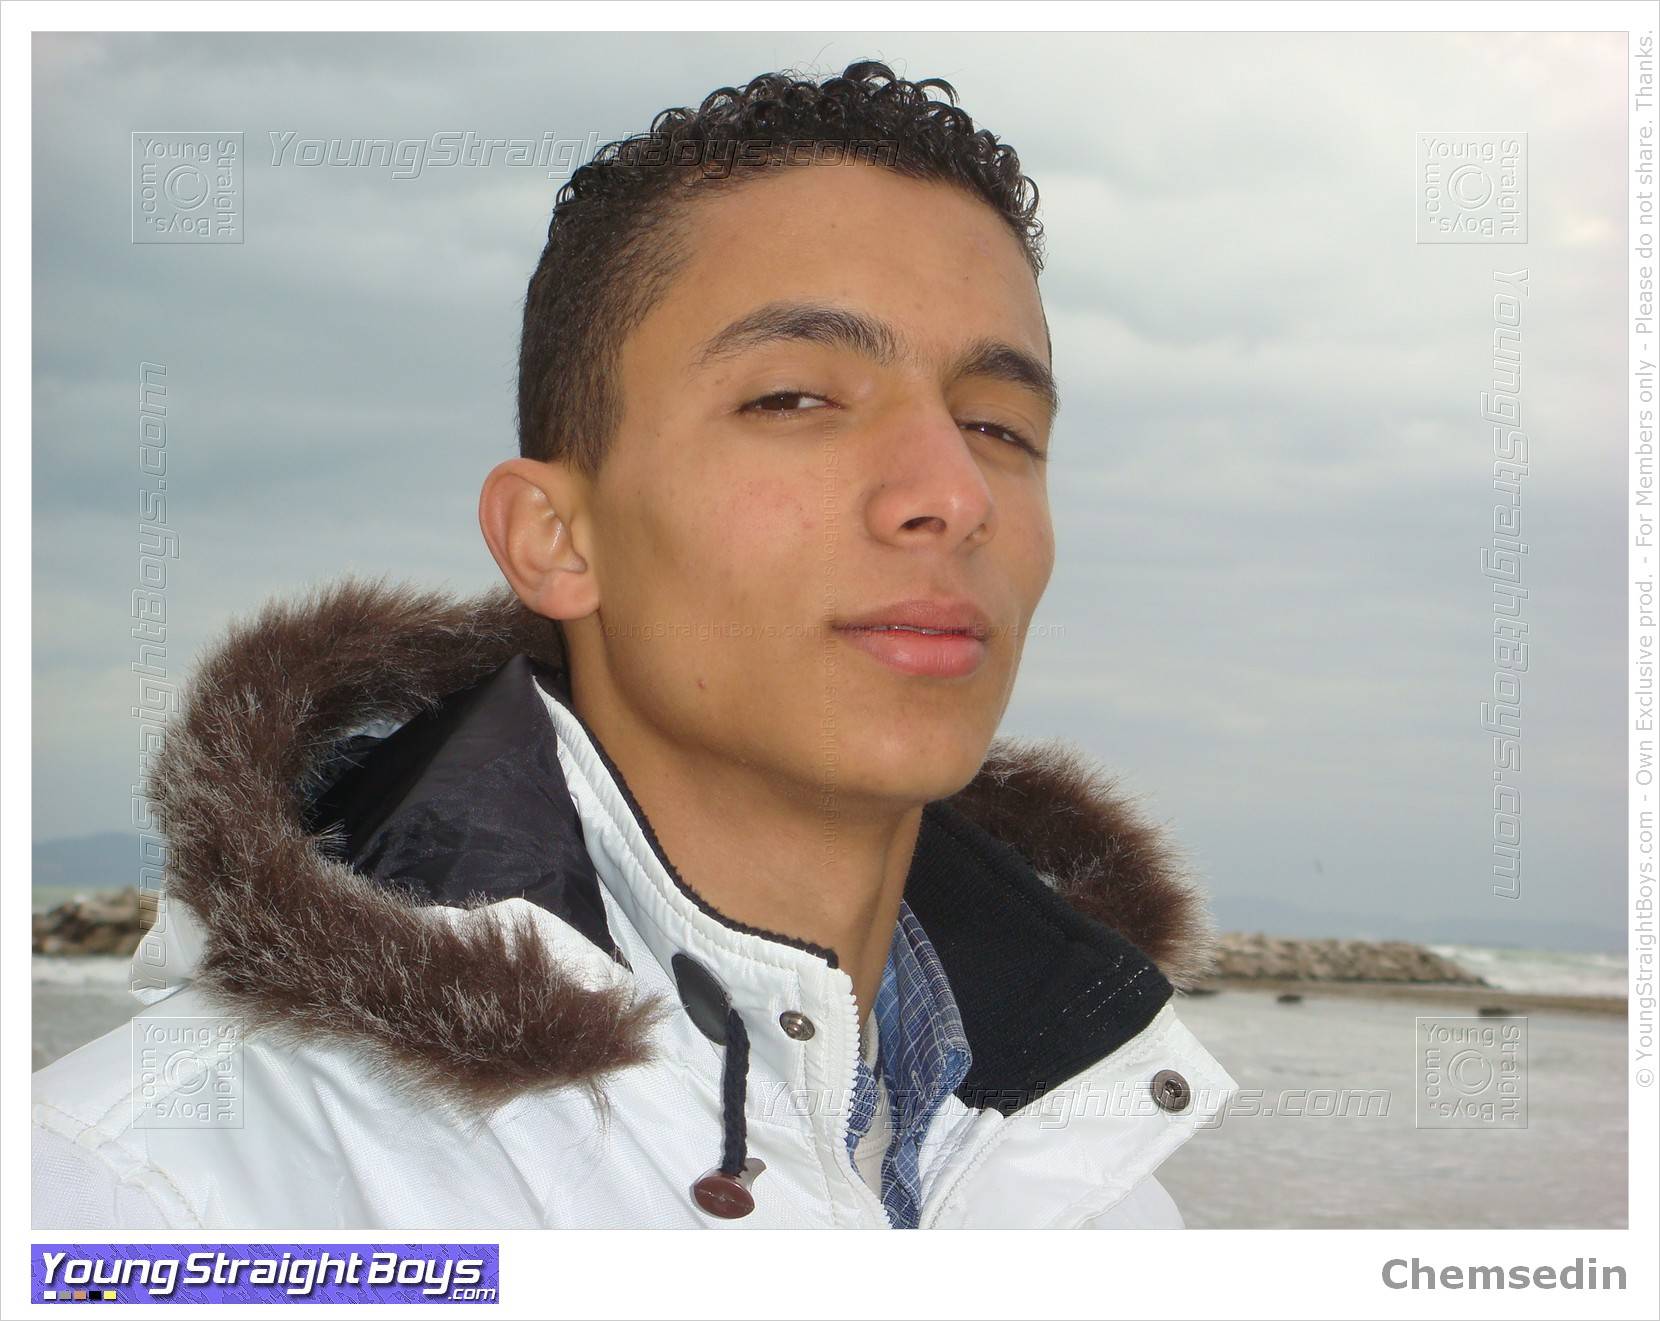 Chemsedin en la playa, un apuesto joven árabe str8 que podría chupar :-)